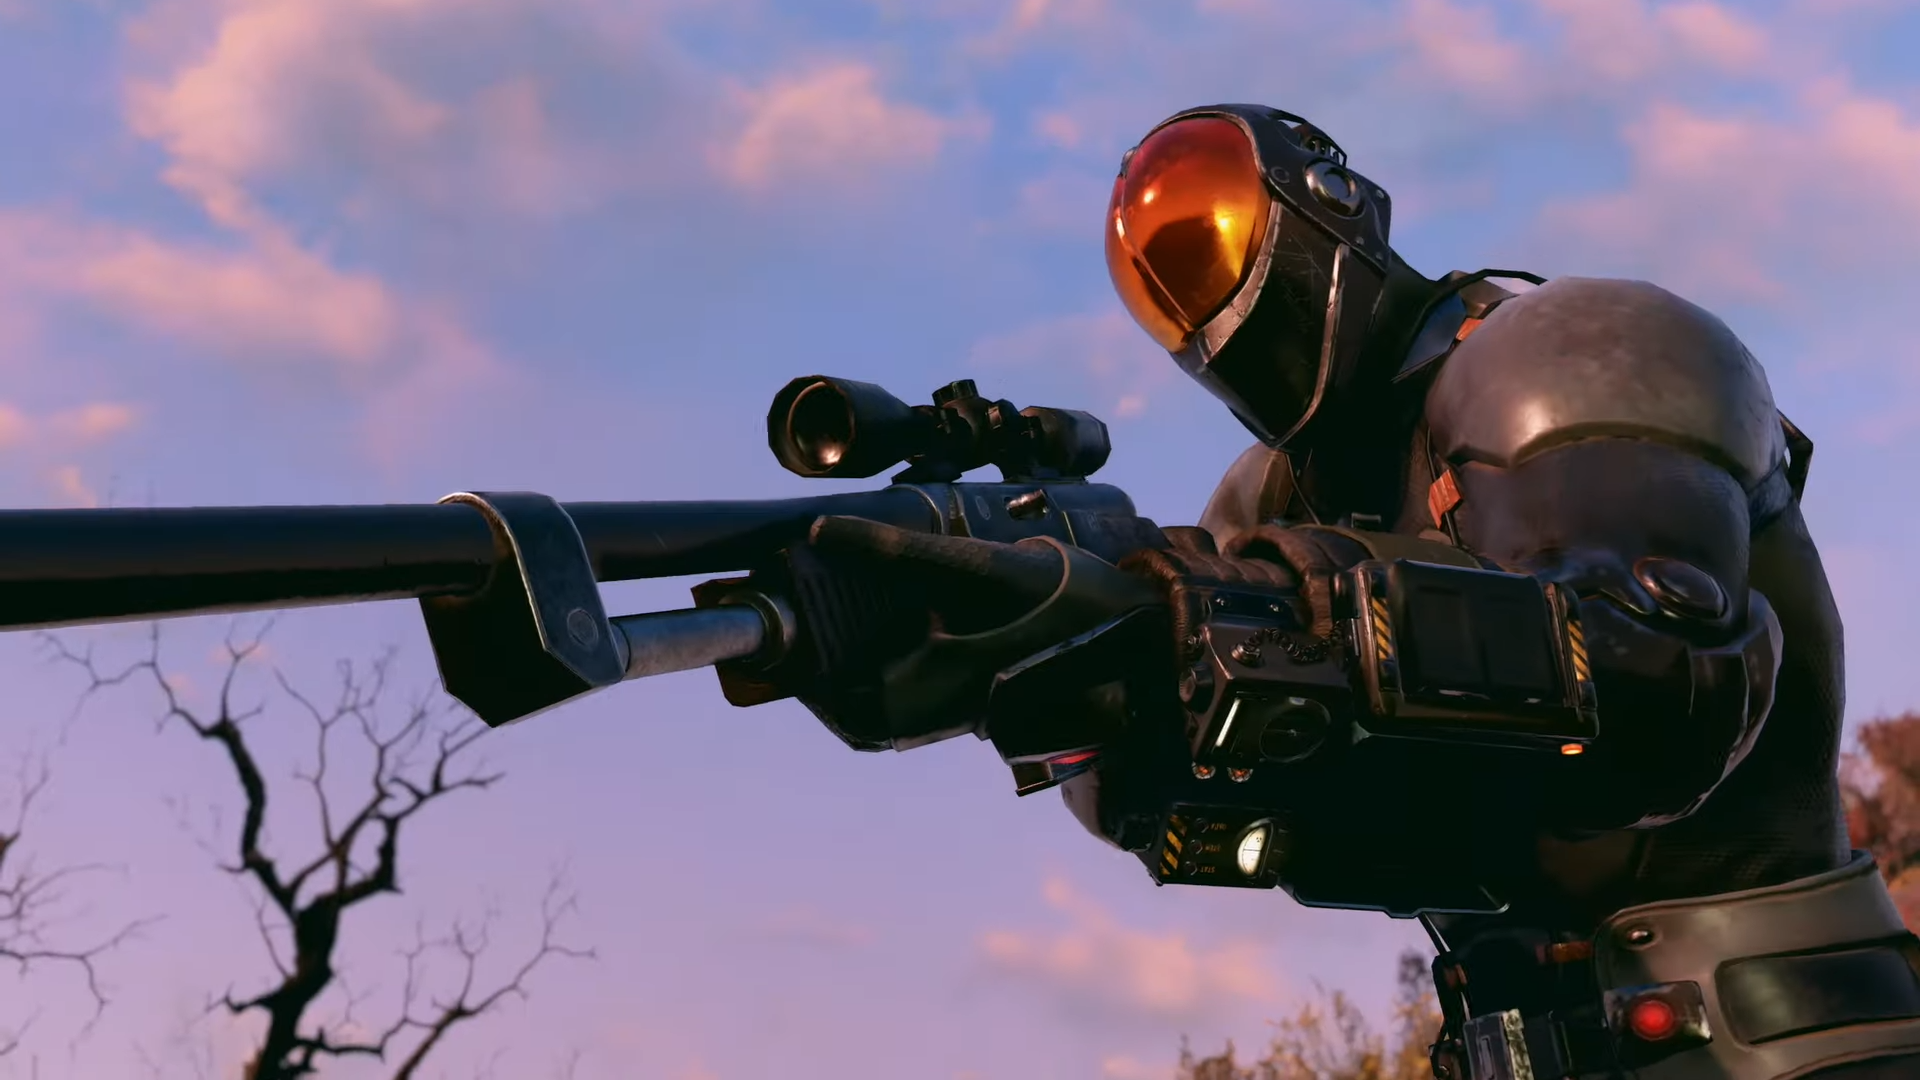 Релизный трейлер Wastelanders — обновления для Fallout 76 с NPC и диалогами